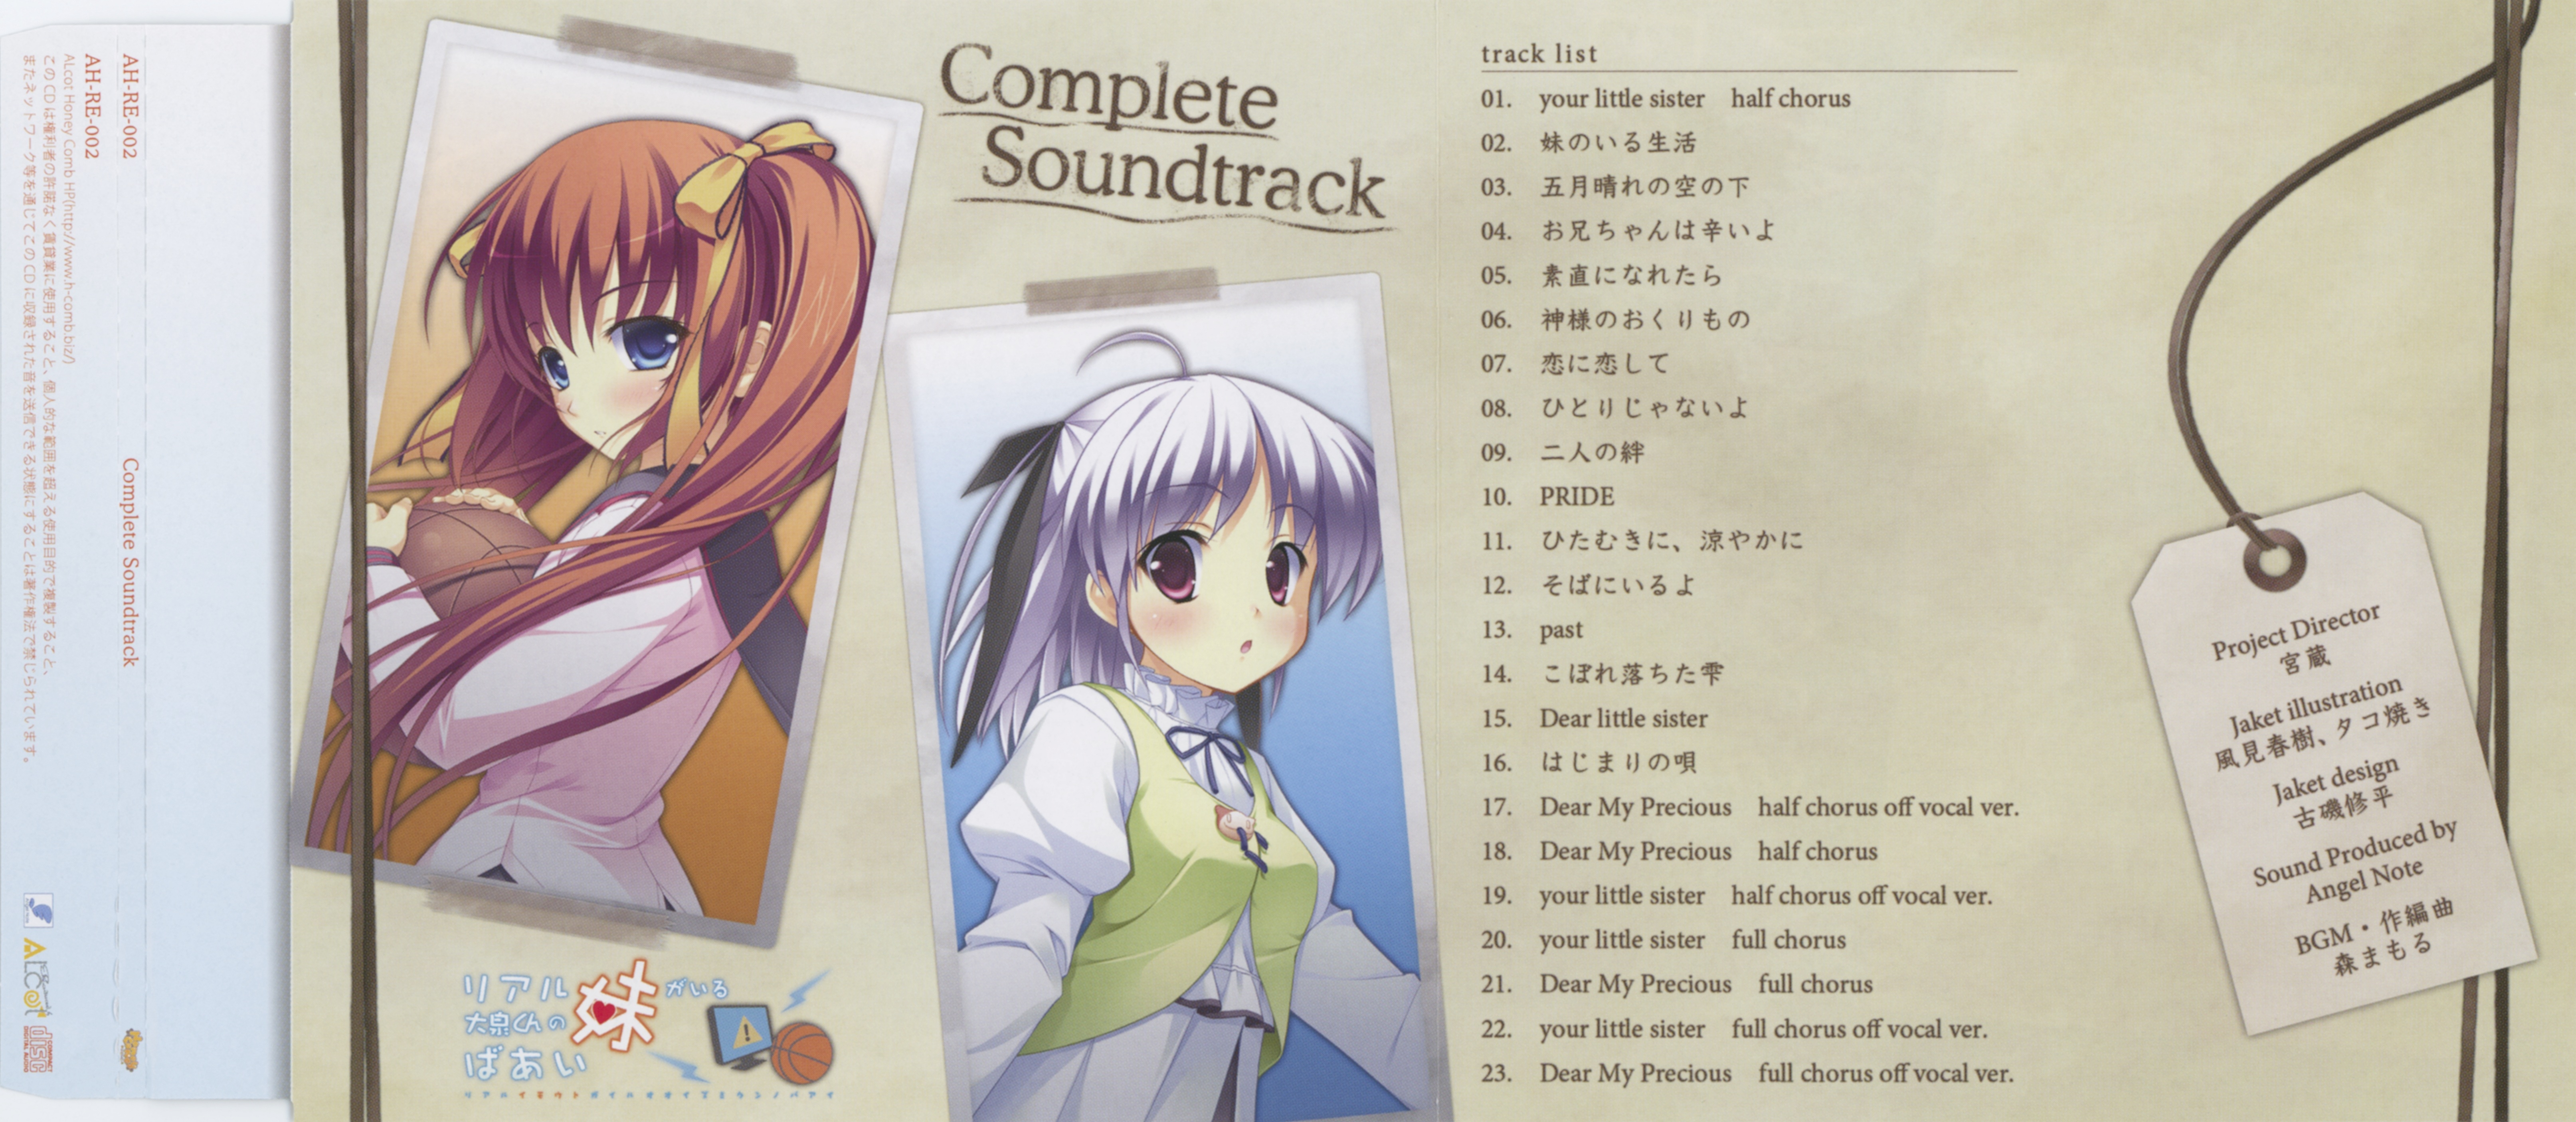 Real Imouto ga Iru Ooizumi-kun no Baai Complete Soundtrack (2010) MP3 -  Download Real Imouto ga Iru Ooizumi-kun no Baai Complete Soundtrack (2010)  Soundtracks for FREE!